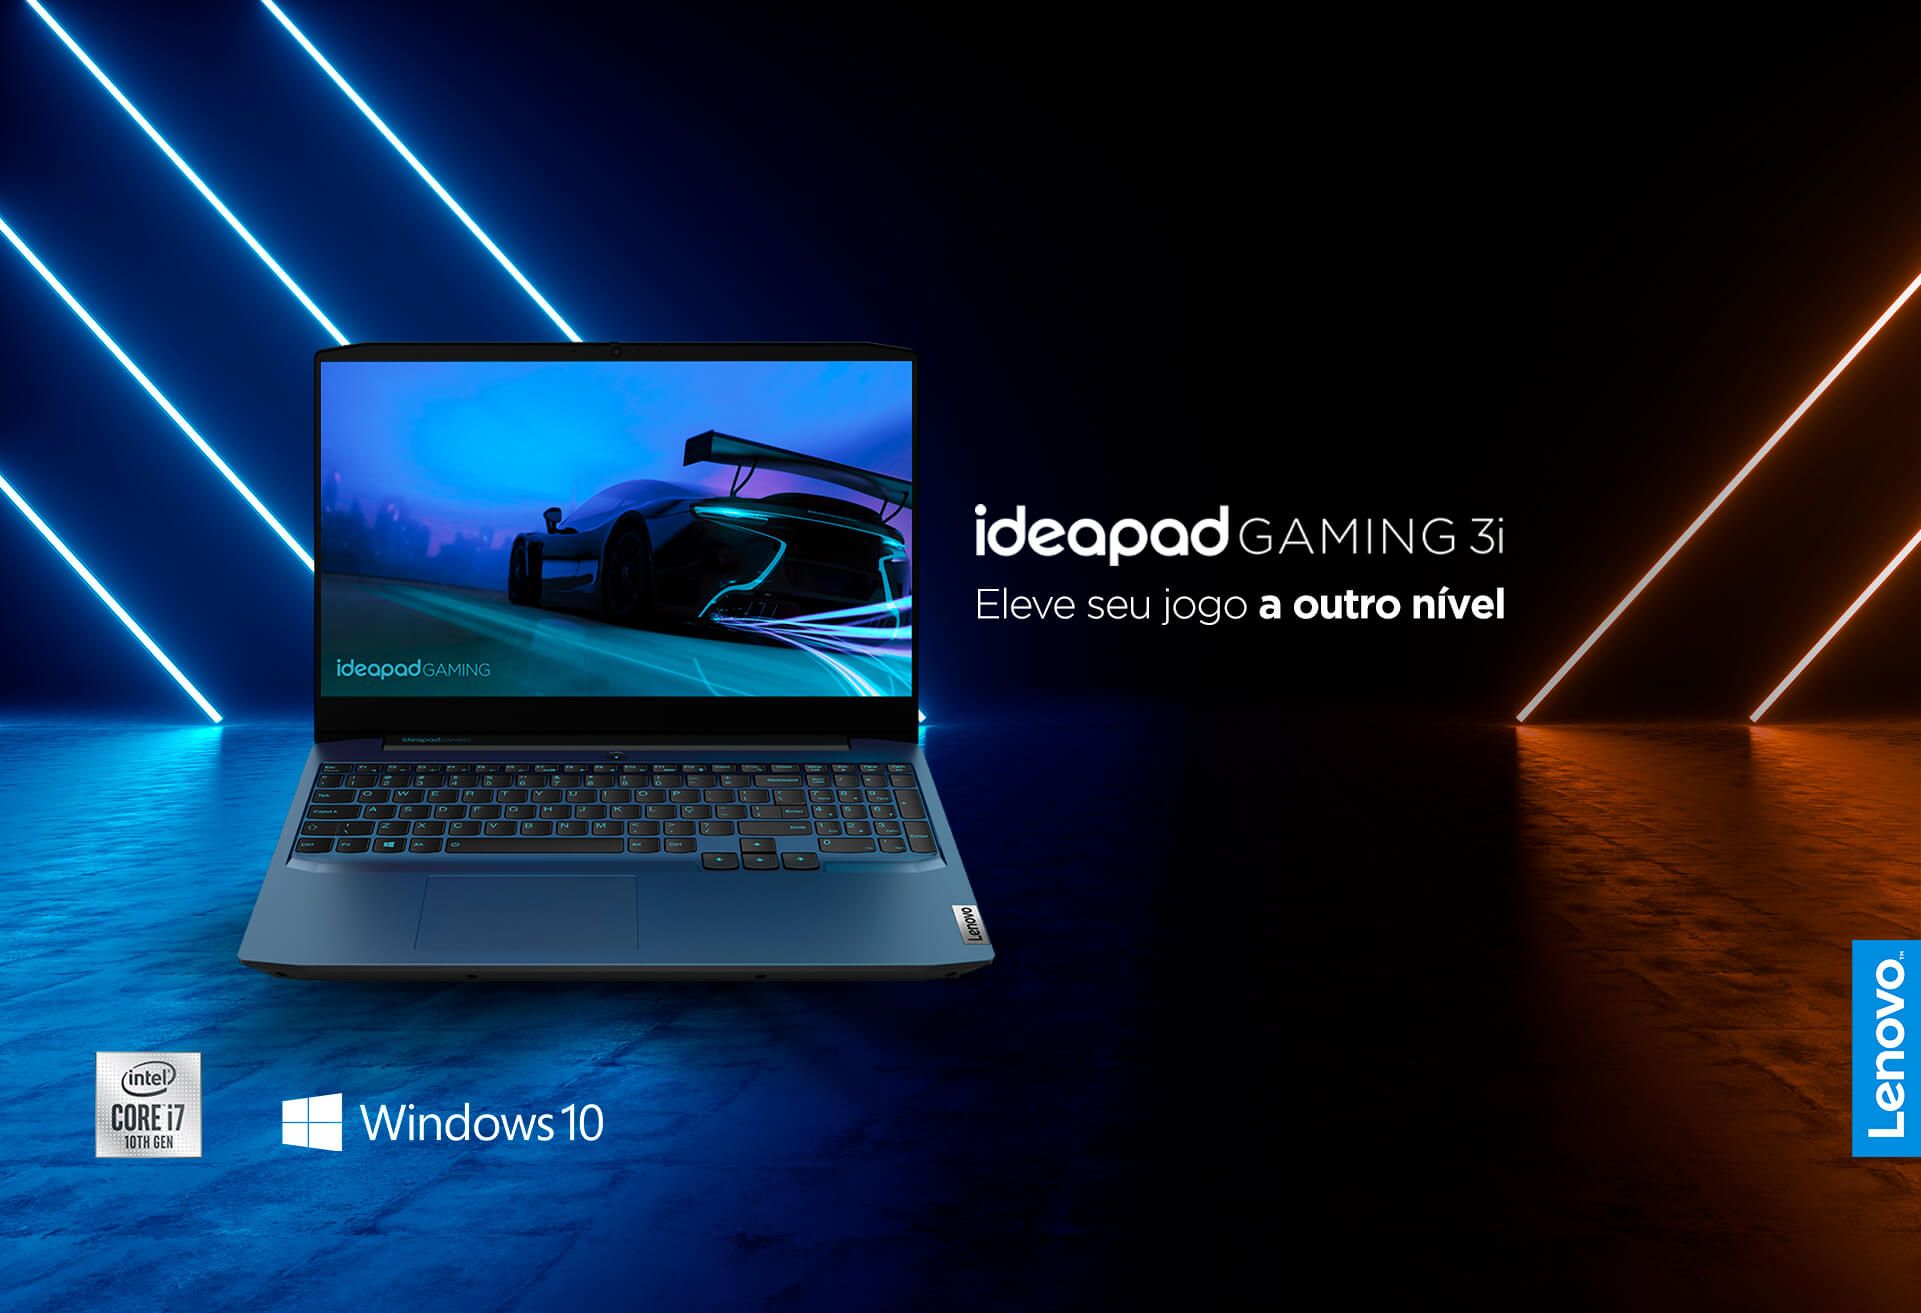 Lenovo ideapad gaming i5. Lenovo IDEAPAD i3. Notebook Lenovo Gamer 3i. Lenovo IDEAPAD Gaming 3i. Lenovo IDEAPAD Gaming 3i 2022.